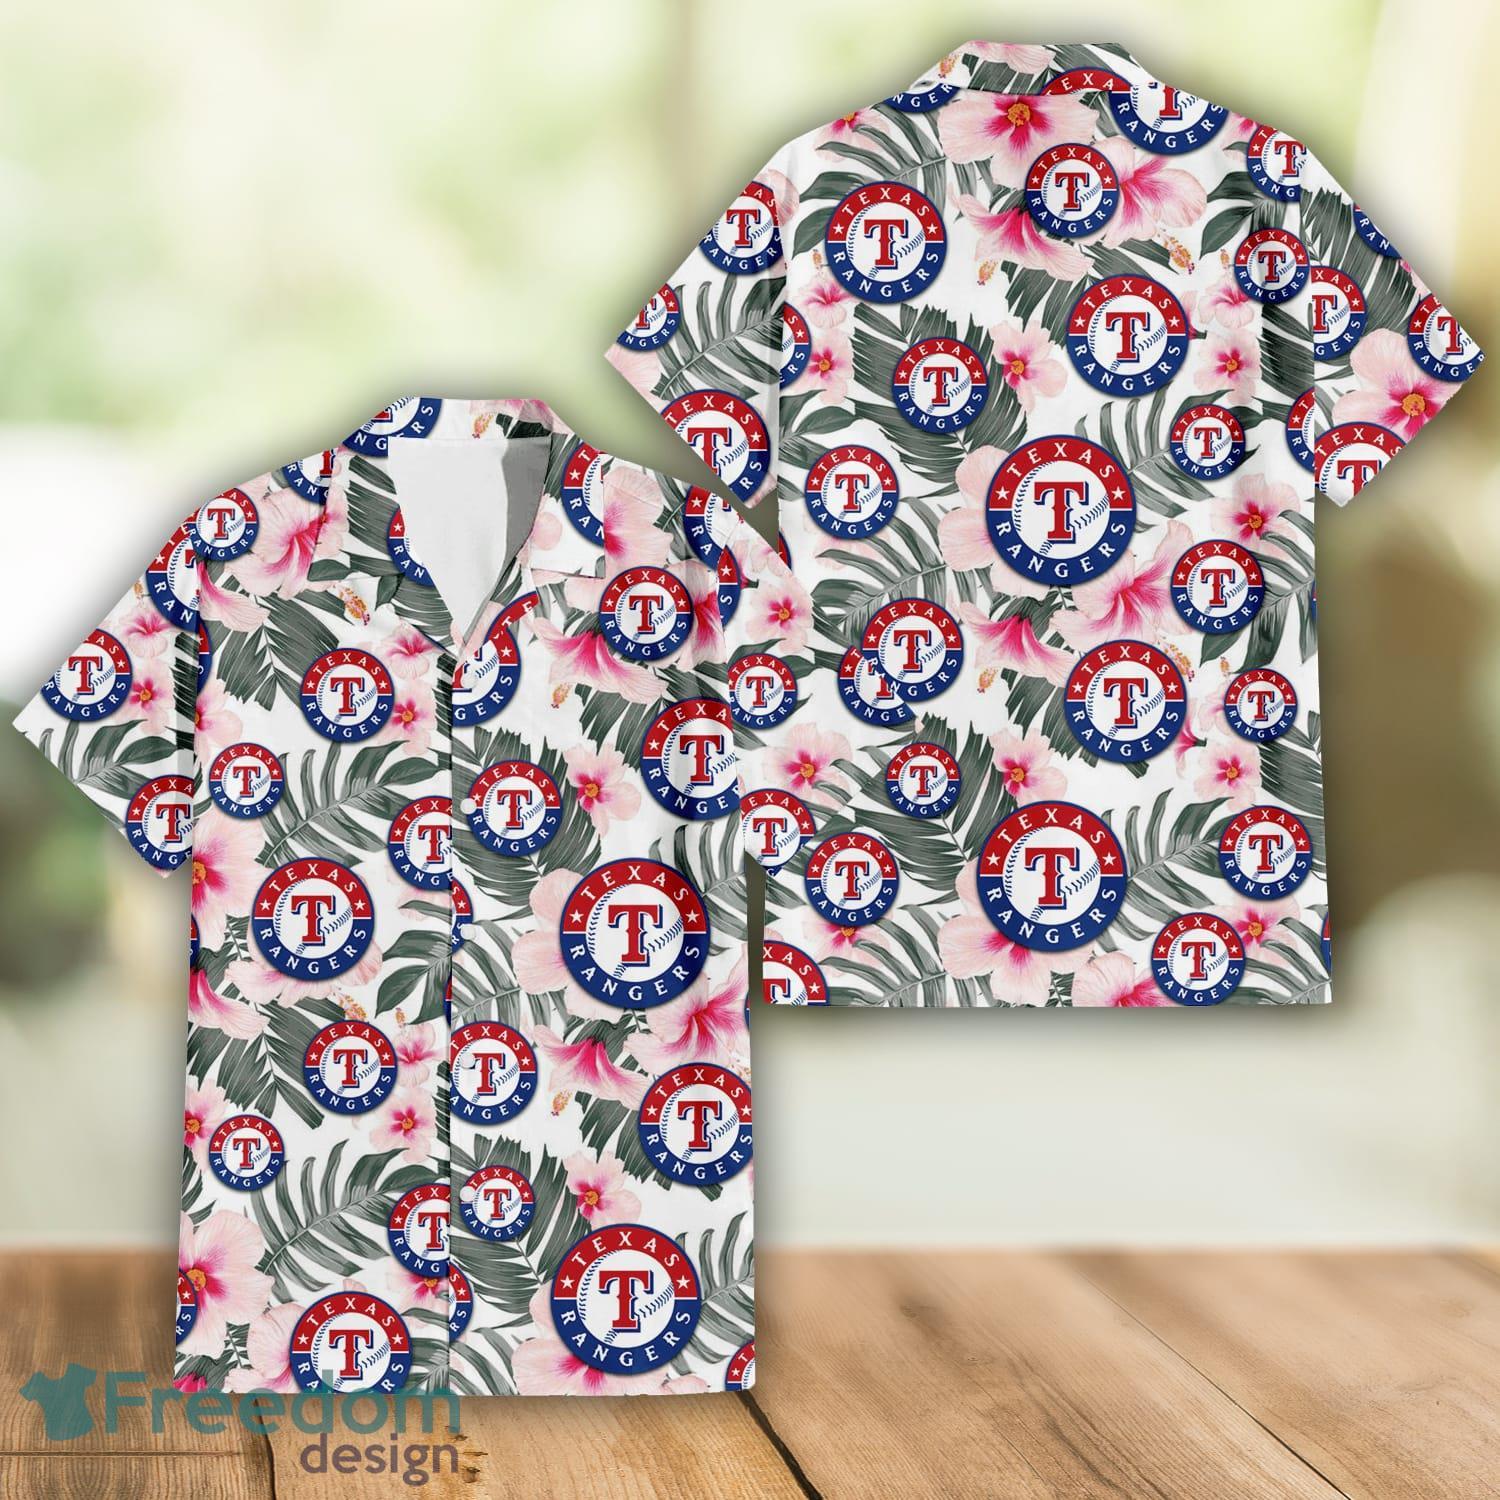 Top-selling item] Custom Texas Rangers Baseball Team Hawaiian Shirt